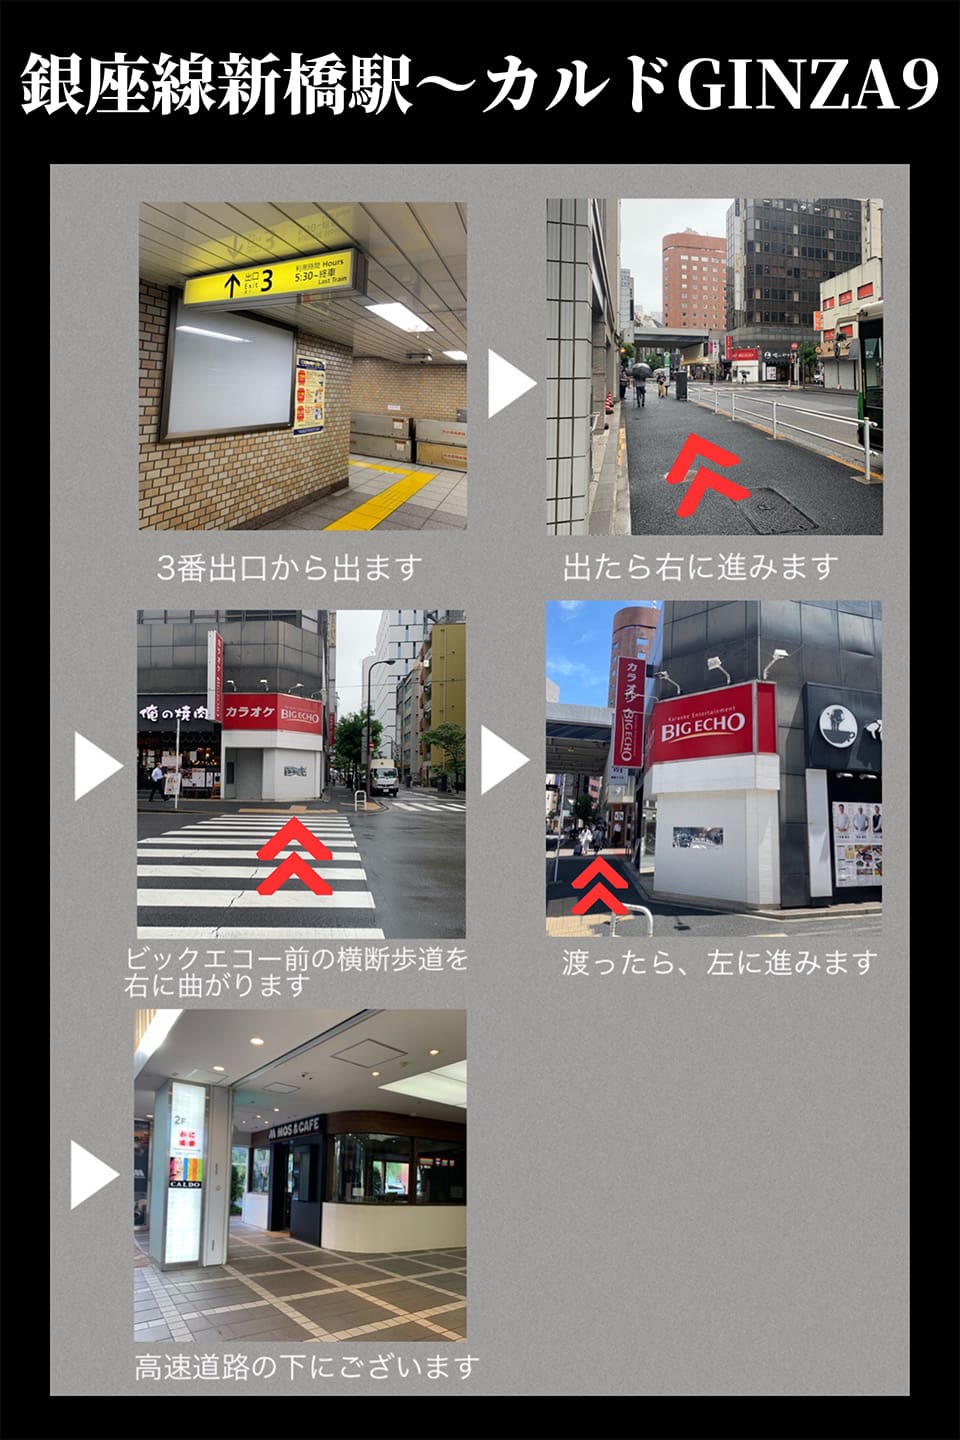 銀座線新橋駅〜カルドGINZA9：3番出口から出ます→出たら右に進みます→ビッグエコー前の横断歩道を右に曲がります→渡ったら、左に進みます→高速道路の下にございます